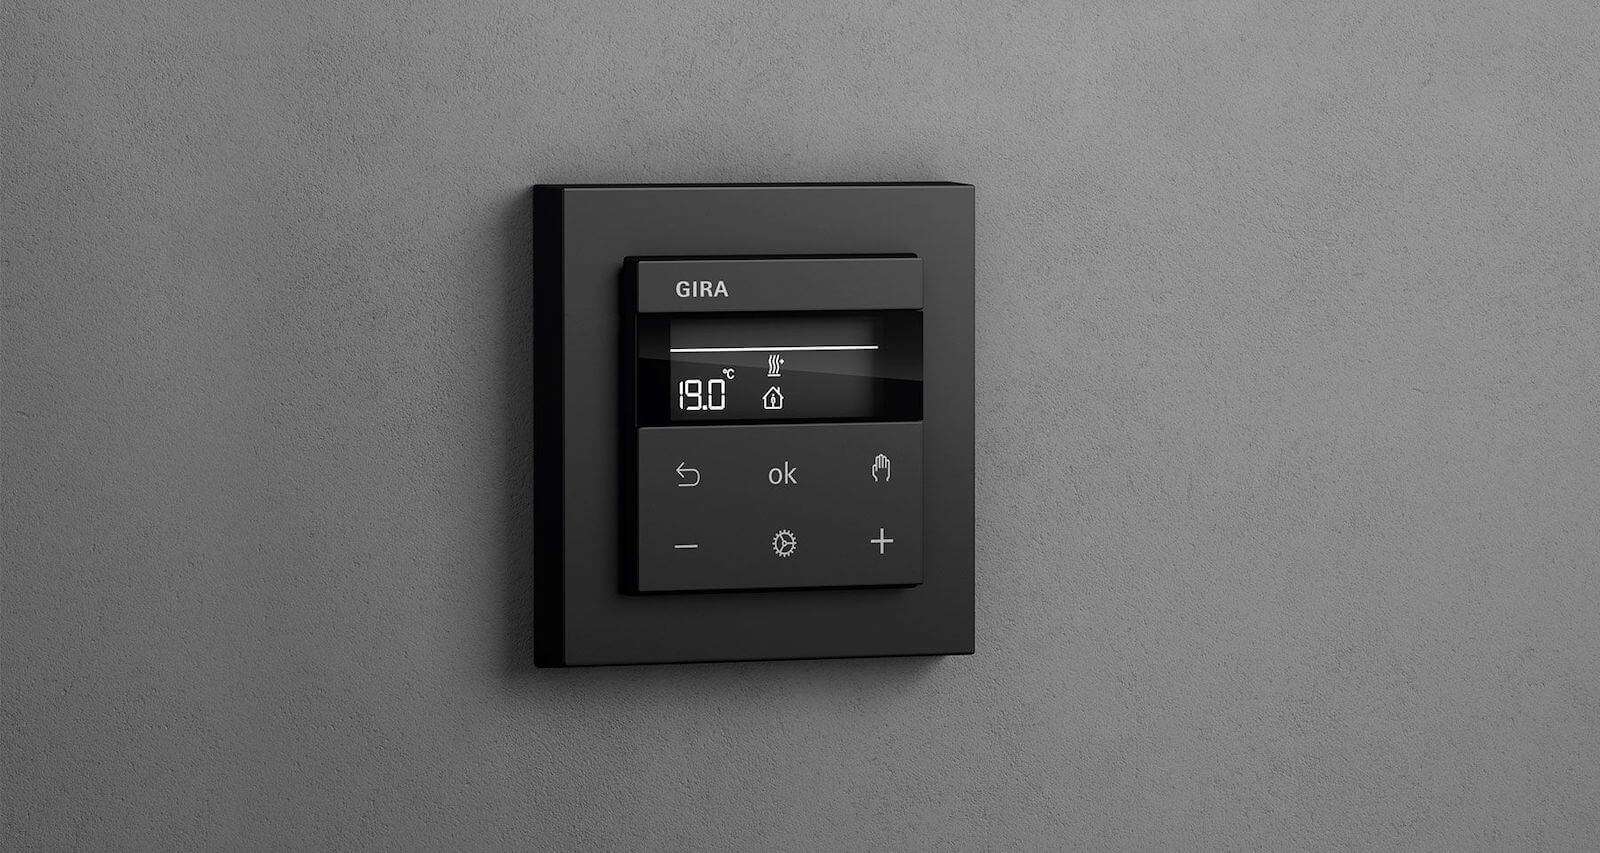 Komfortable Heizungssteuerung mit dem Gira System 3000. ✓per App ✓manuell ✓anpassbare Rahmendesigns